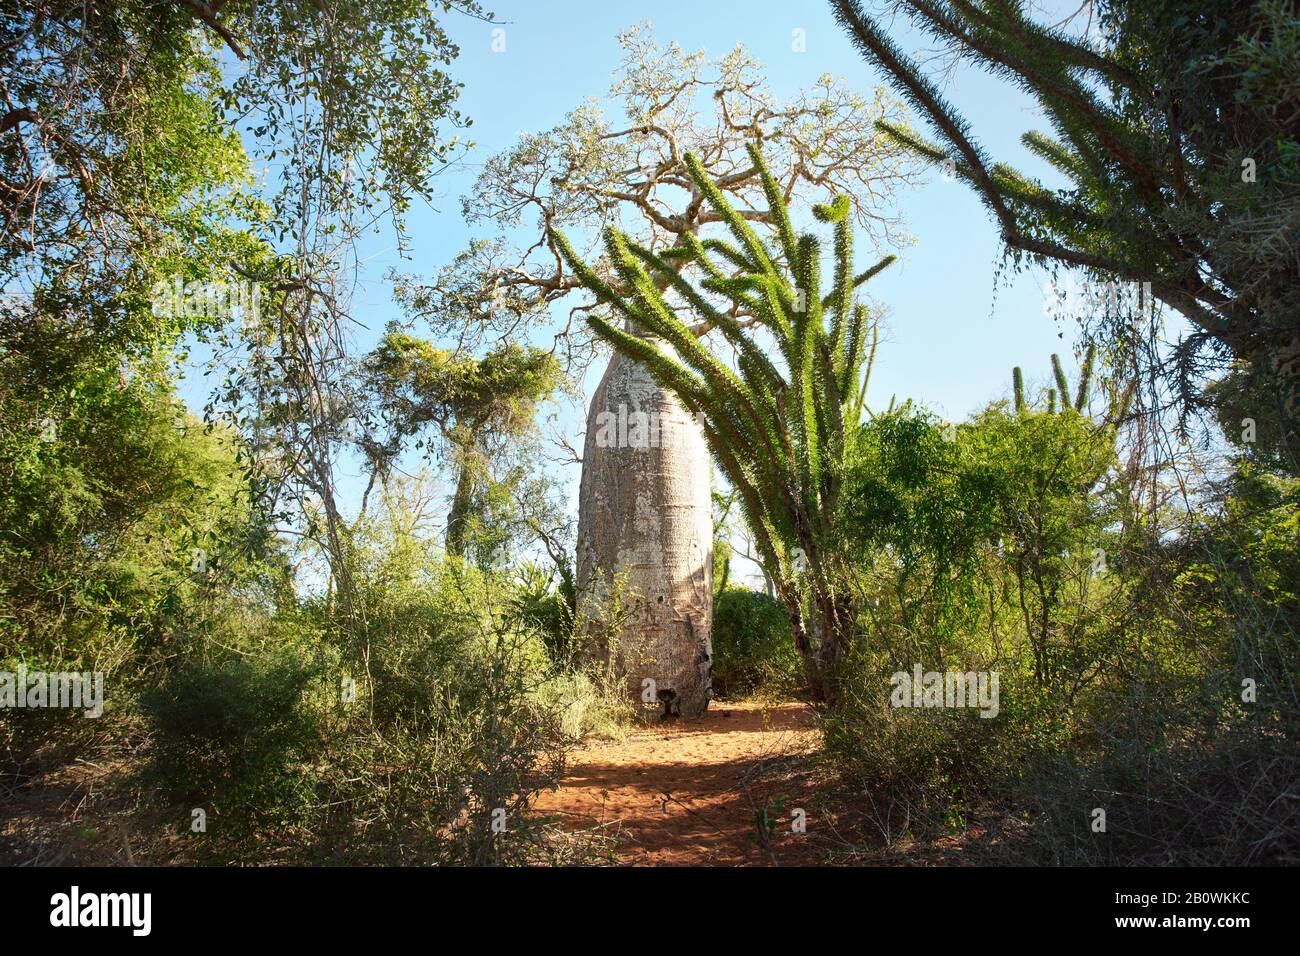 Forêt avec de petits baobab et des poulpes, buissons et herbe poussant sur un sol rouge poussiéreux, fort contre-jour Banque D'Images